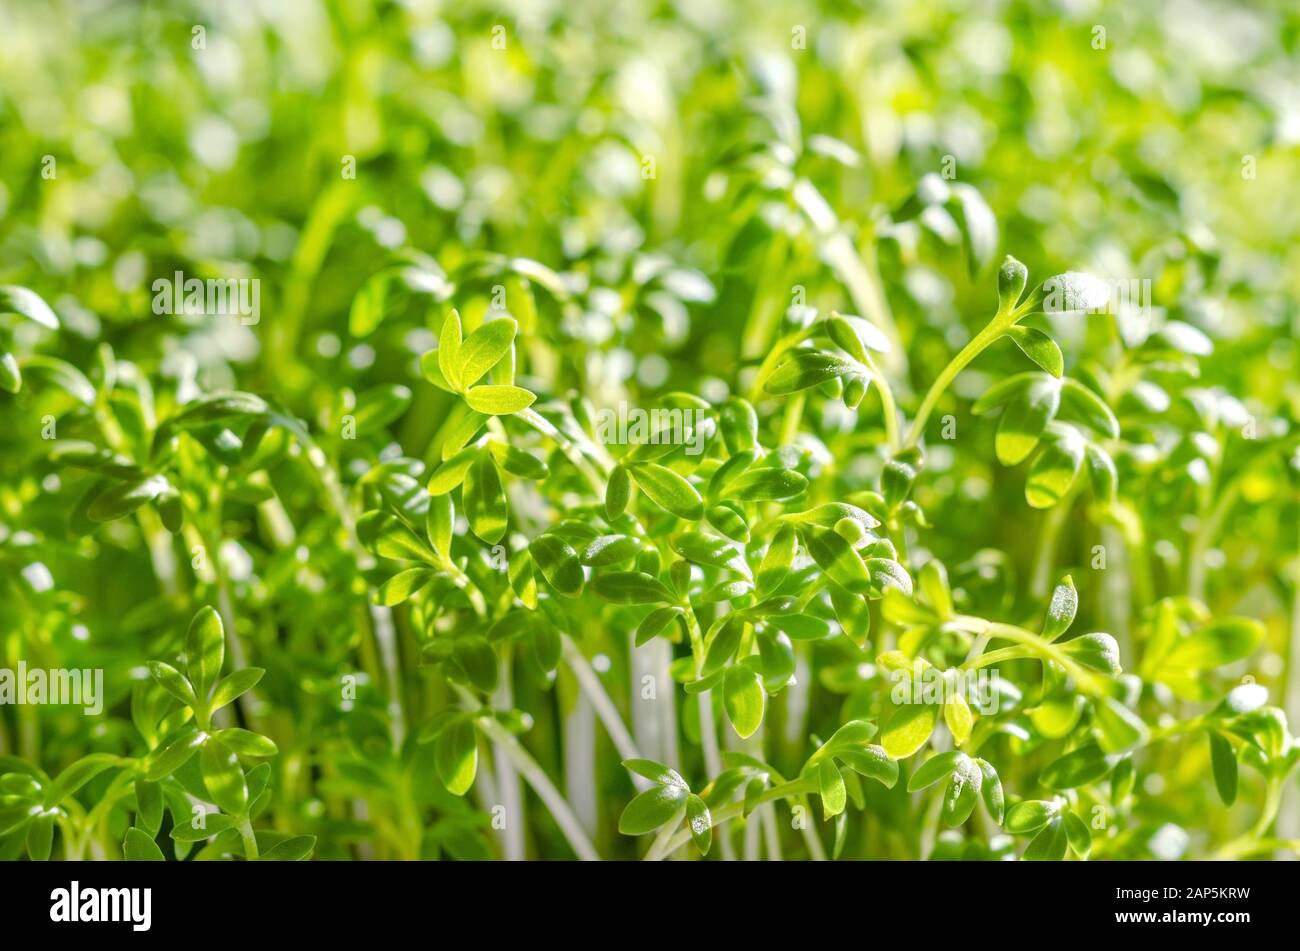 Le cresson alénois pousses croissant dans la lumière du soleil. Vue avant du cress, aussi pepperwort ou peppergrass. Lepidium sativum, une plante comestible à croissance rapide. Voir vert Banque D'Images